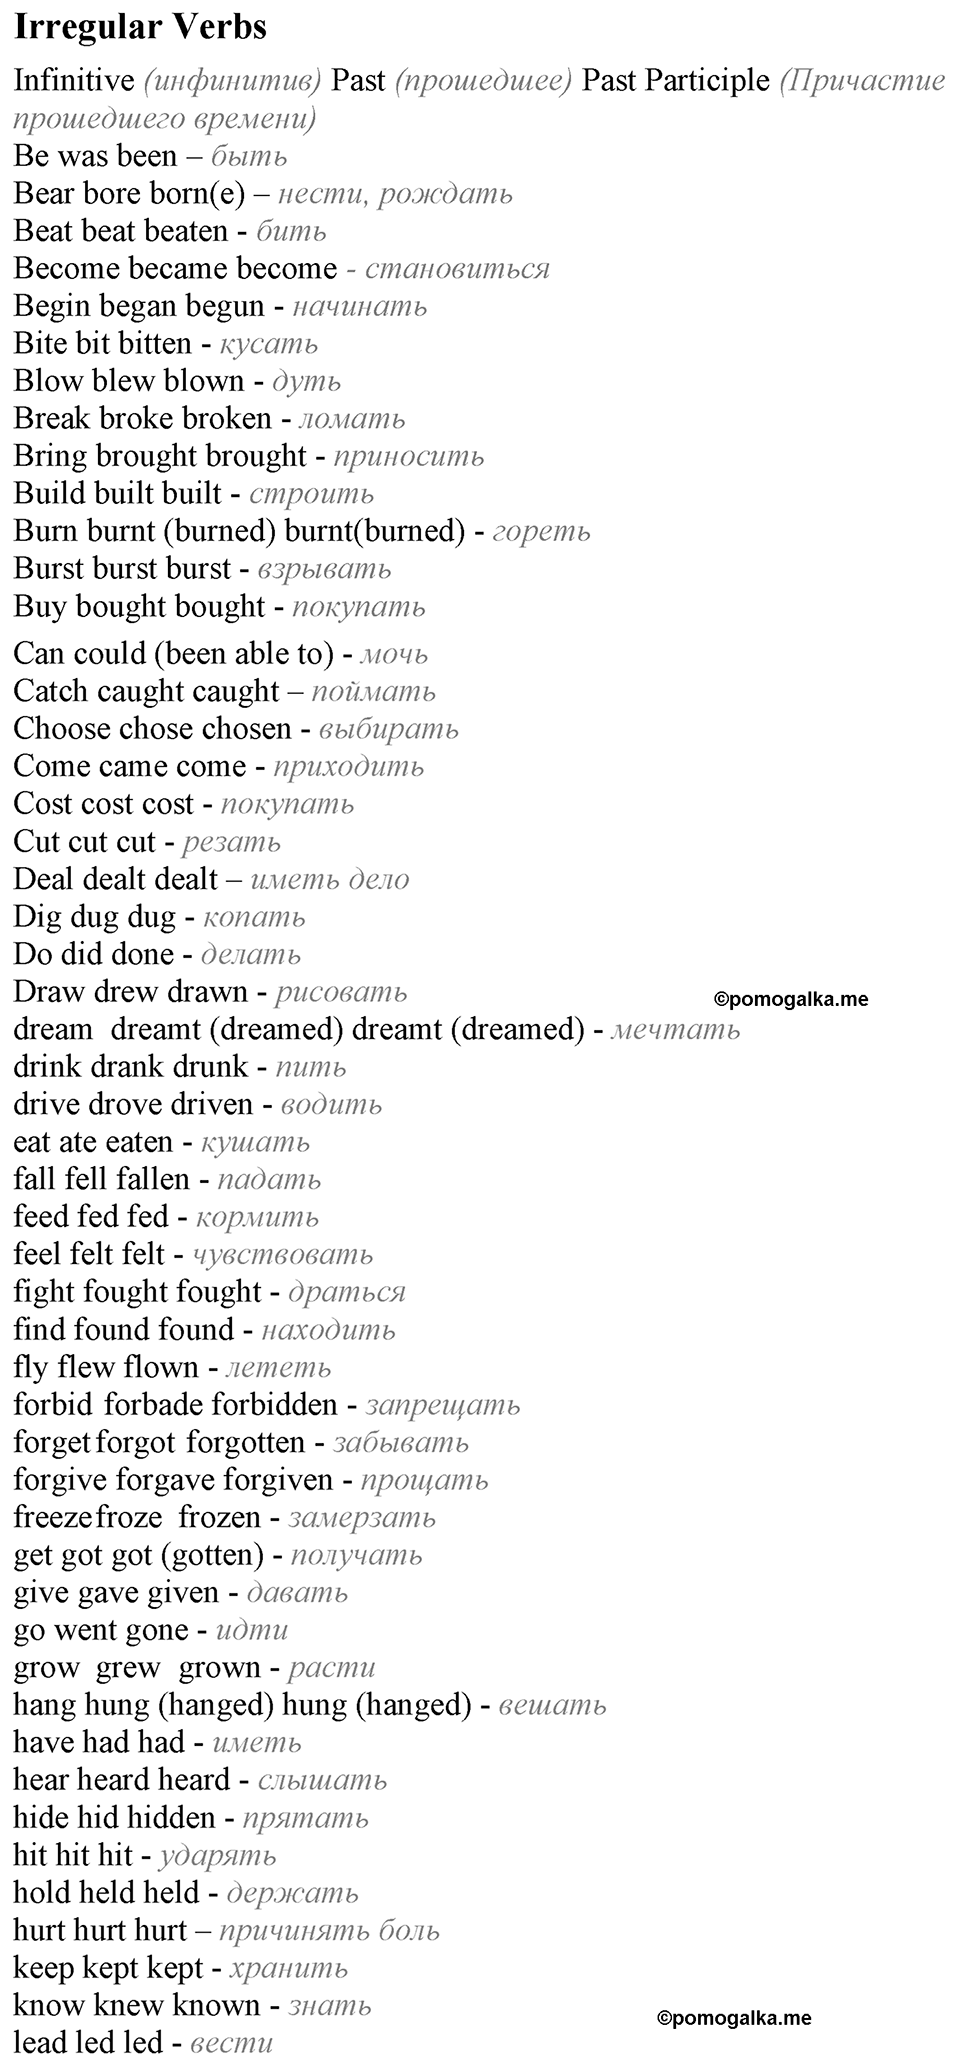 Страница 87 Irregular Verbs английский язык 8 класс Spotlight